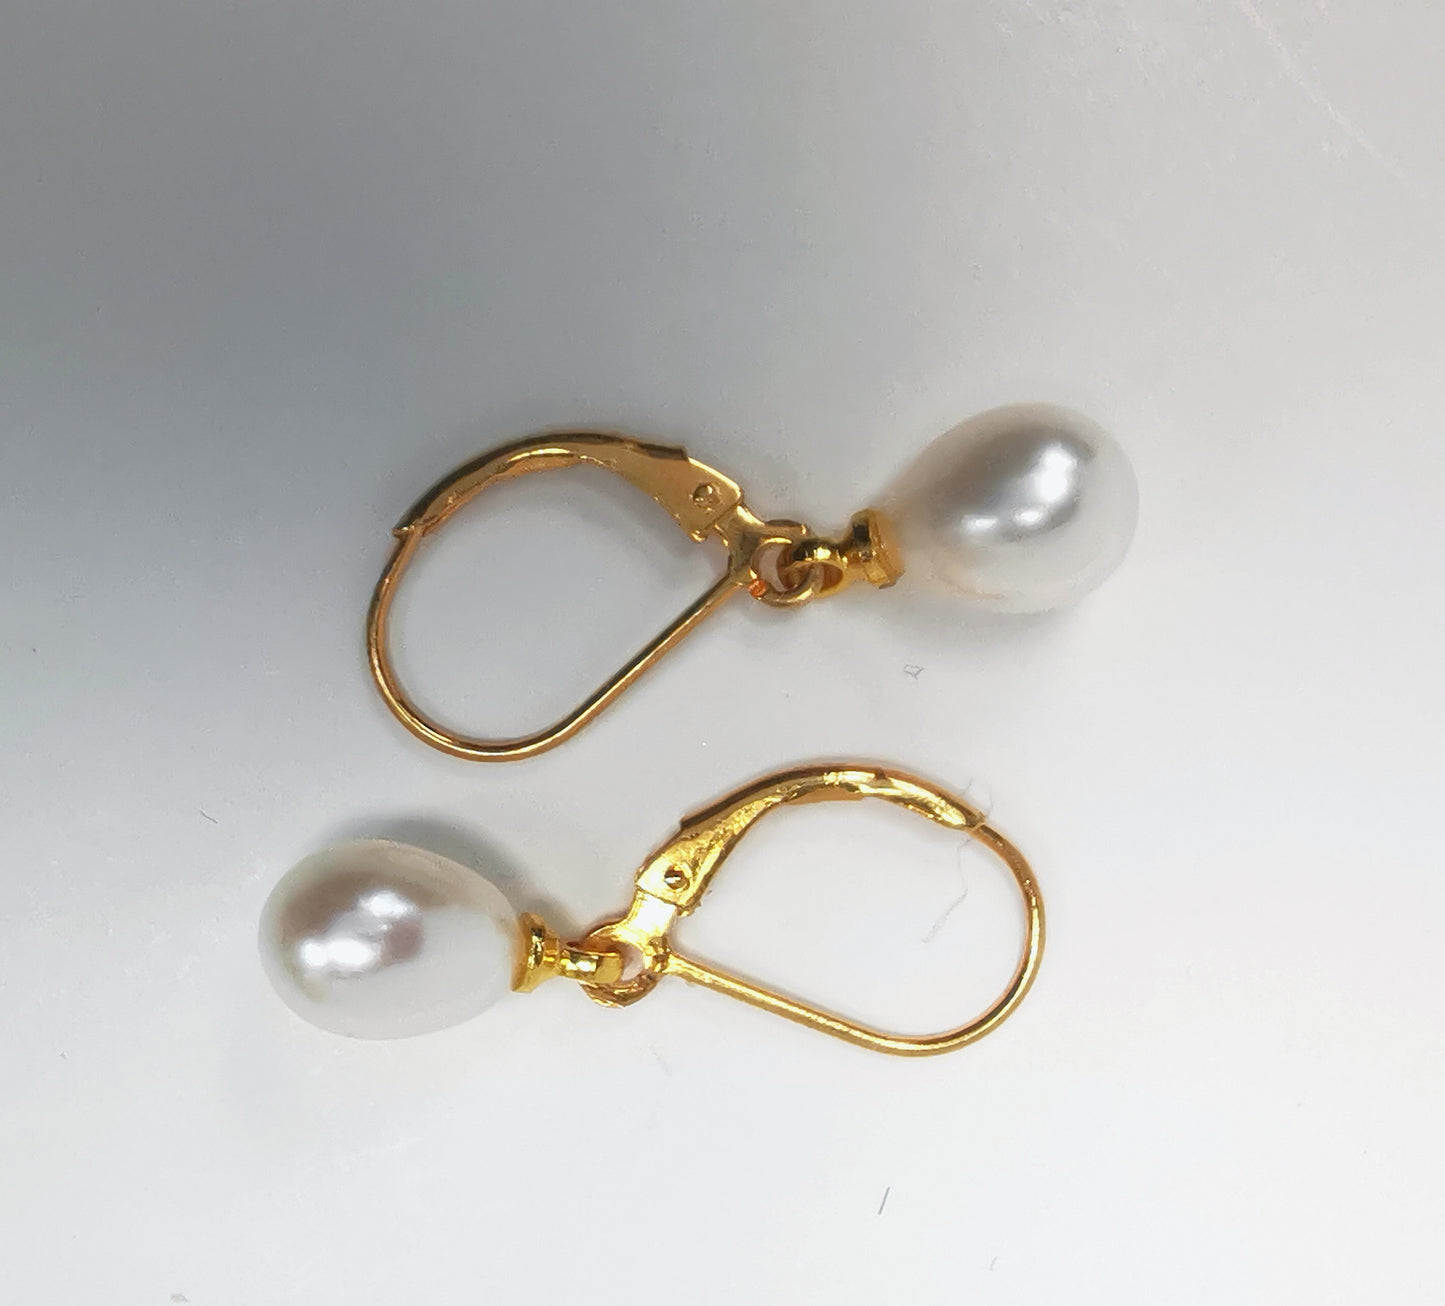 Boucles d'oreilles perles de culture blanches 7-9mm sur dormeuses plaquées or. Présentées posées sur un fond blanc, à l'horizontale, celle de dessus perle à droite , celle de dessous perle à gauche. Vue de dessus.